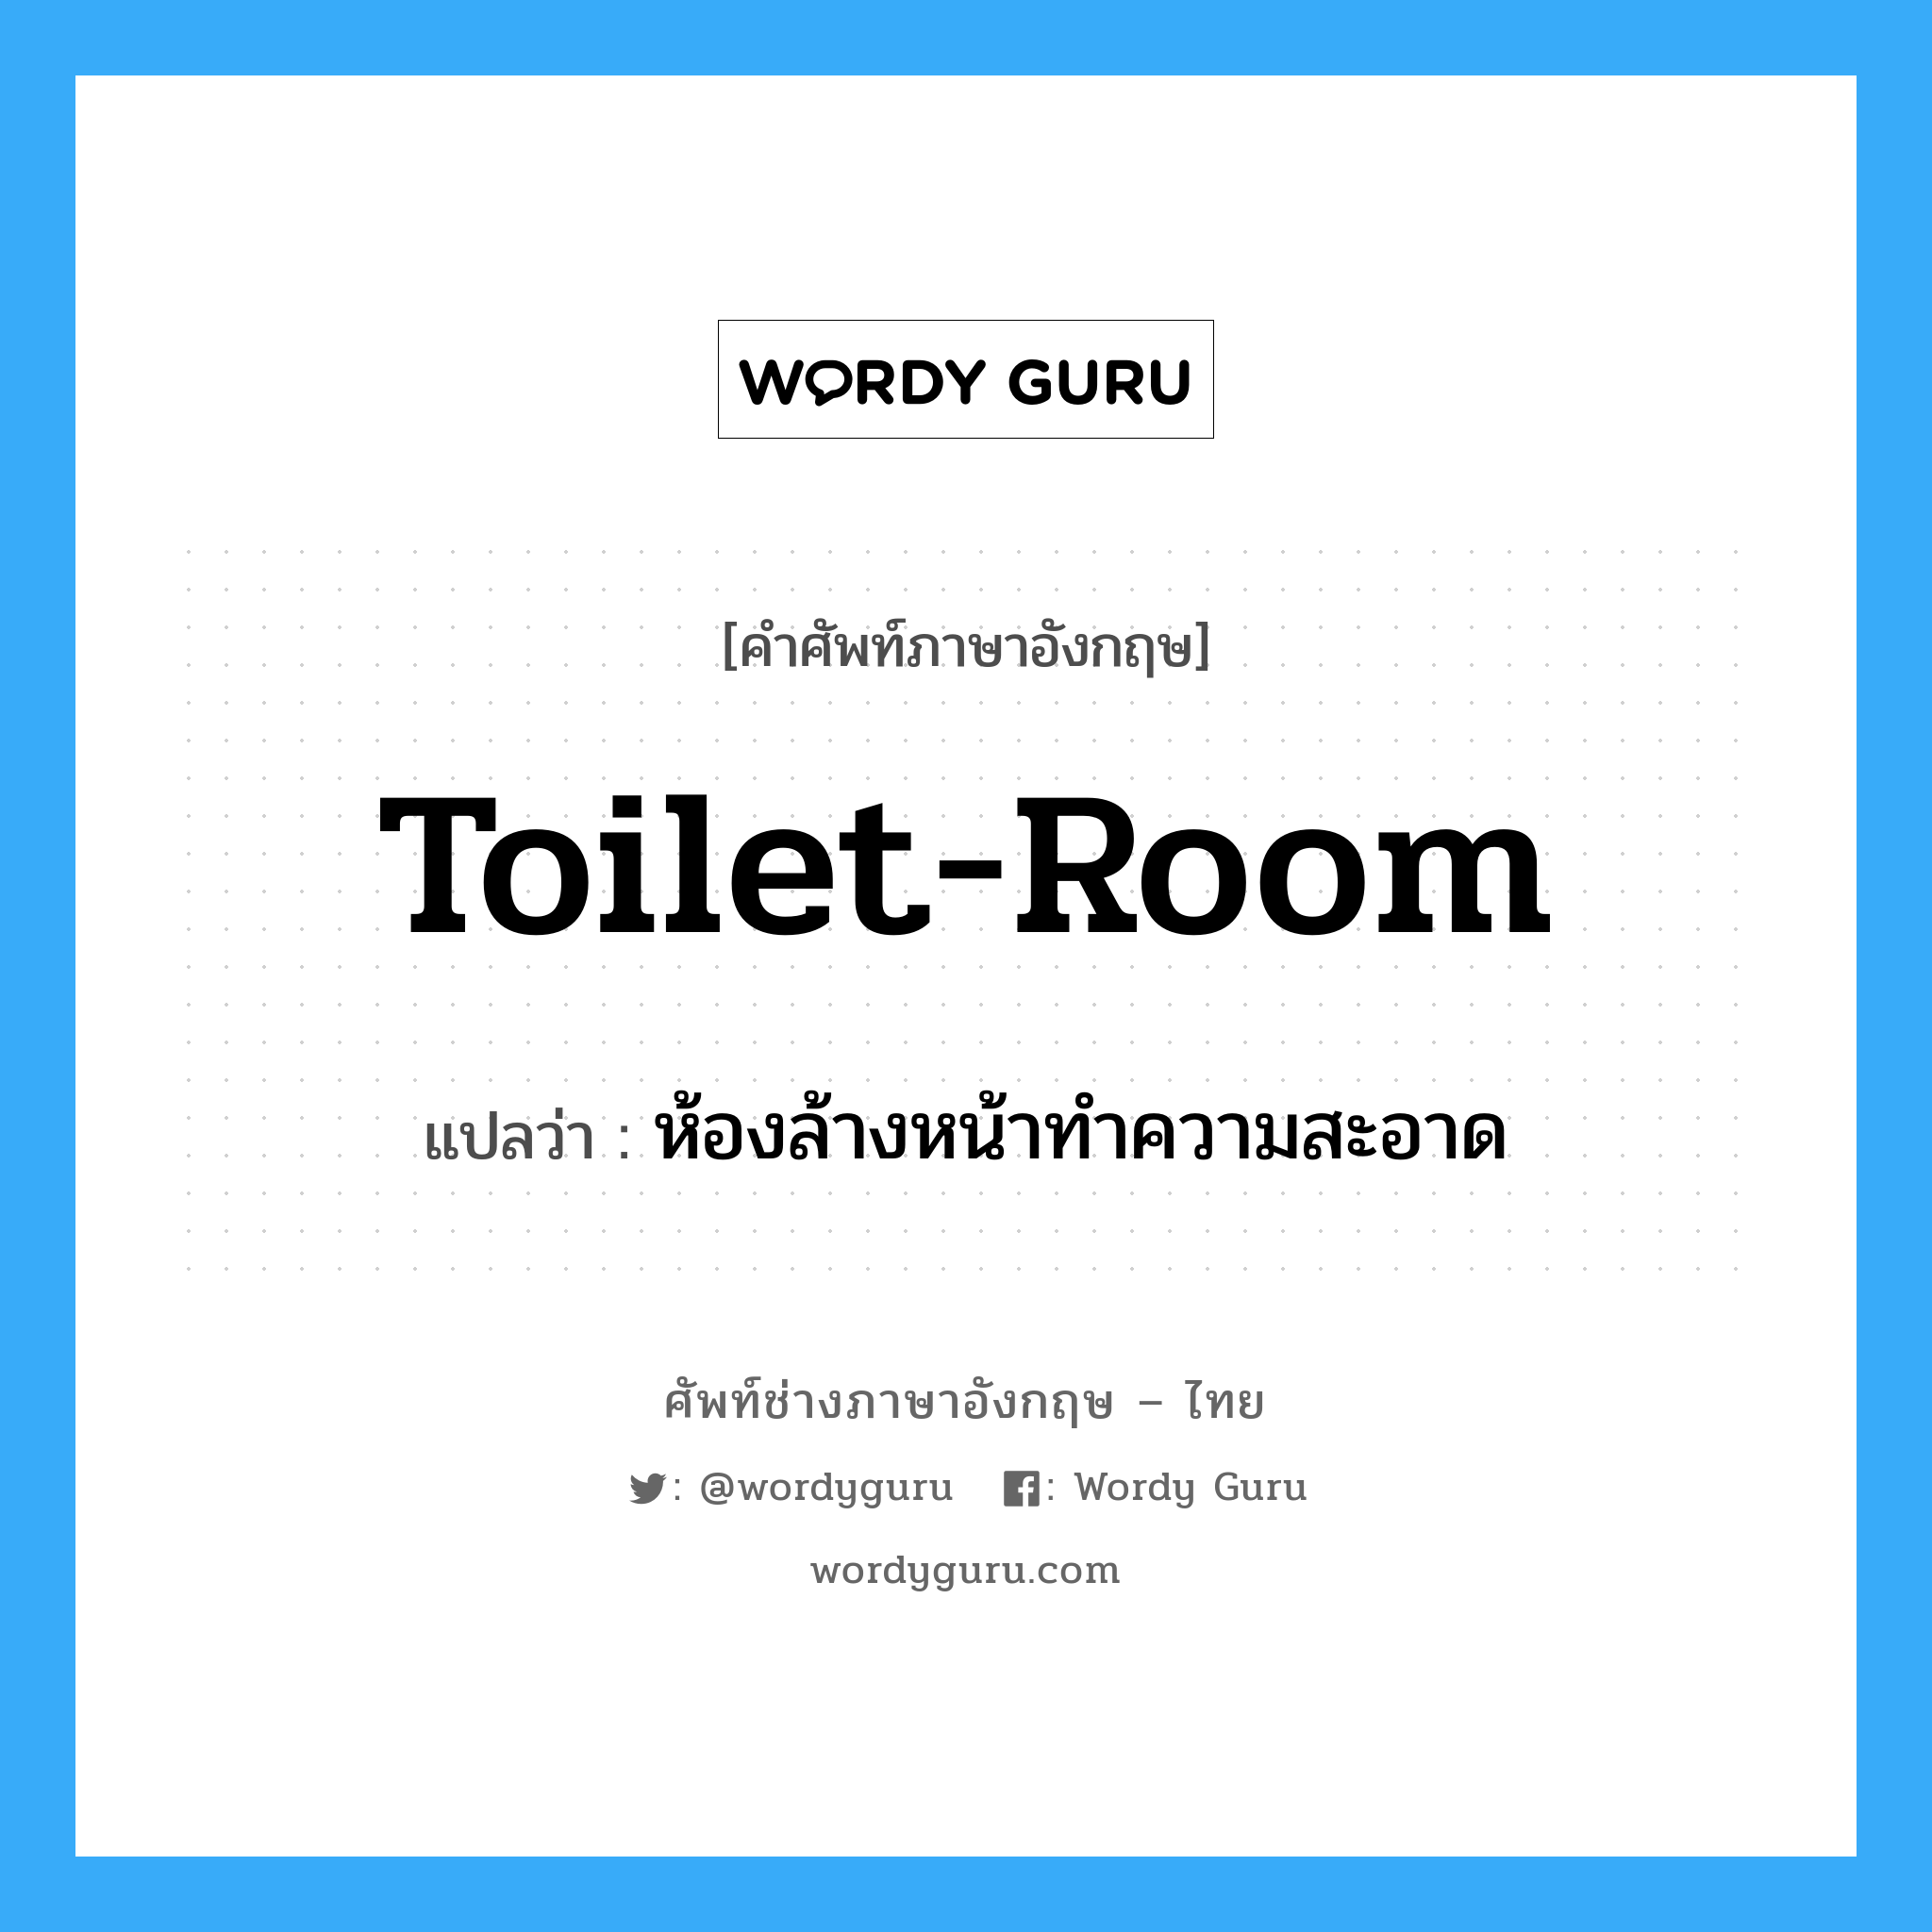 toilet-room แปลว่า?, คำศัพท์ช่างภาษาอังกฤษ - ไทย toilet-room คำศัพท์ภาษาอังกฤษ toilet-room แปลว่า ห้องล้างหน้าทำความสะอาด